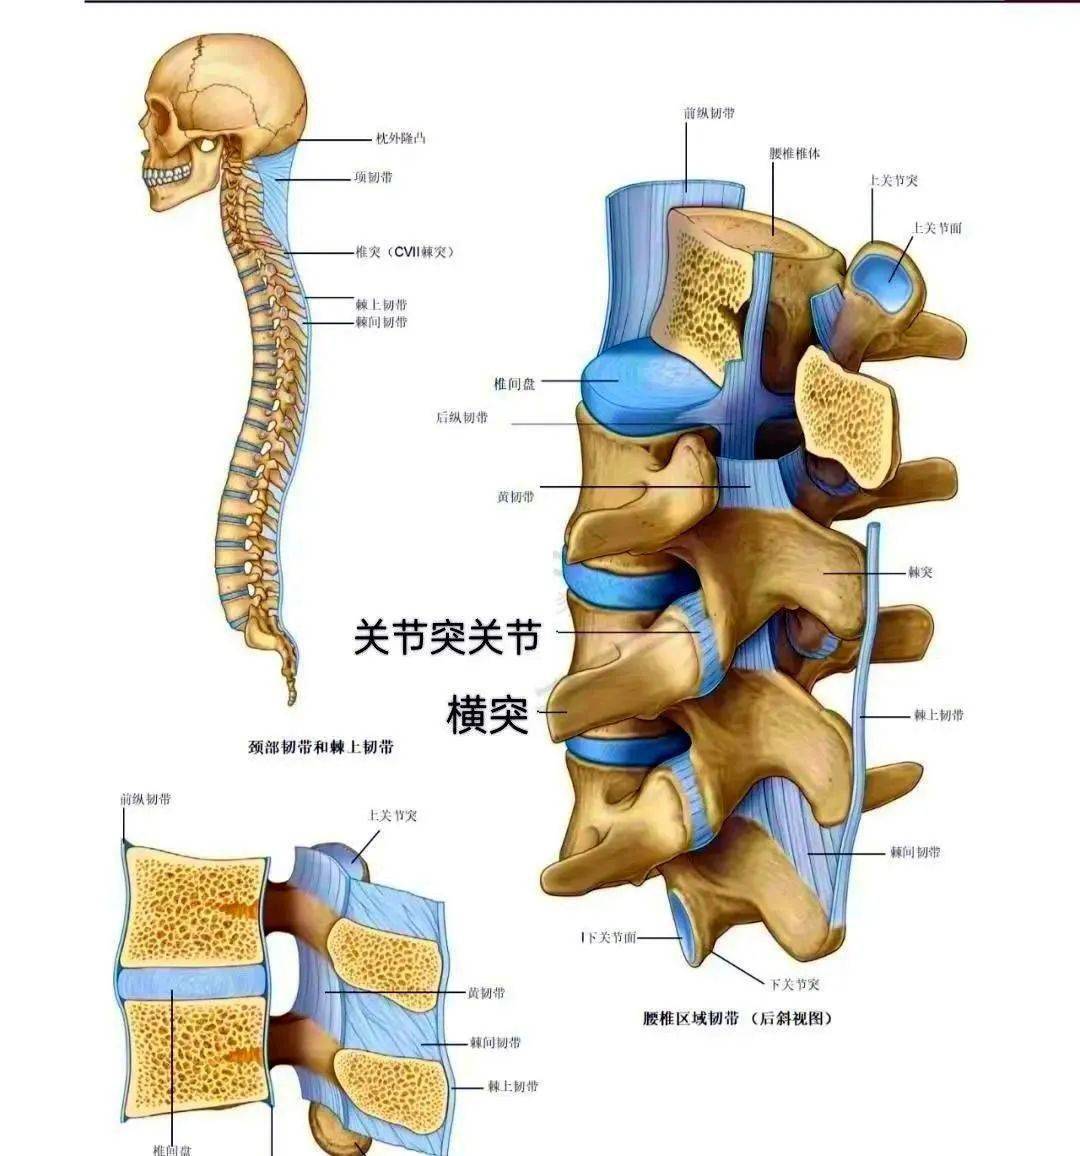 椎间孔的附属韧带椎间孔内的神经内容物 神经根,根动脉后方关节突前方